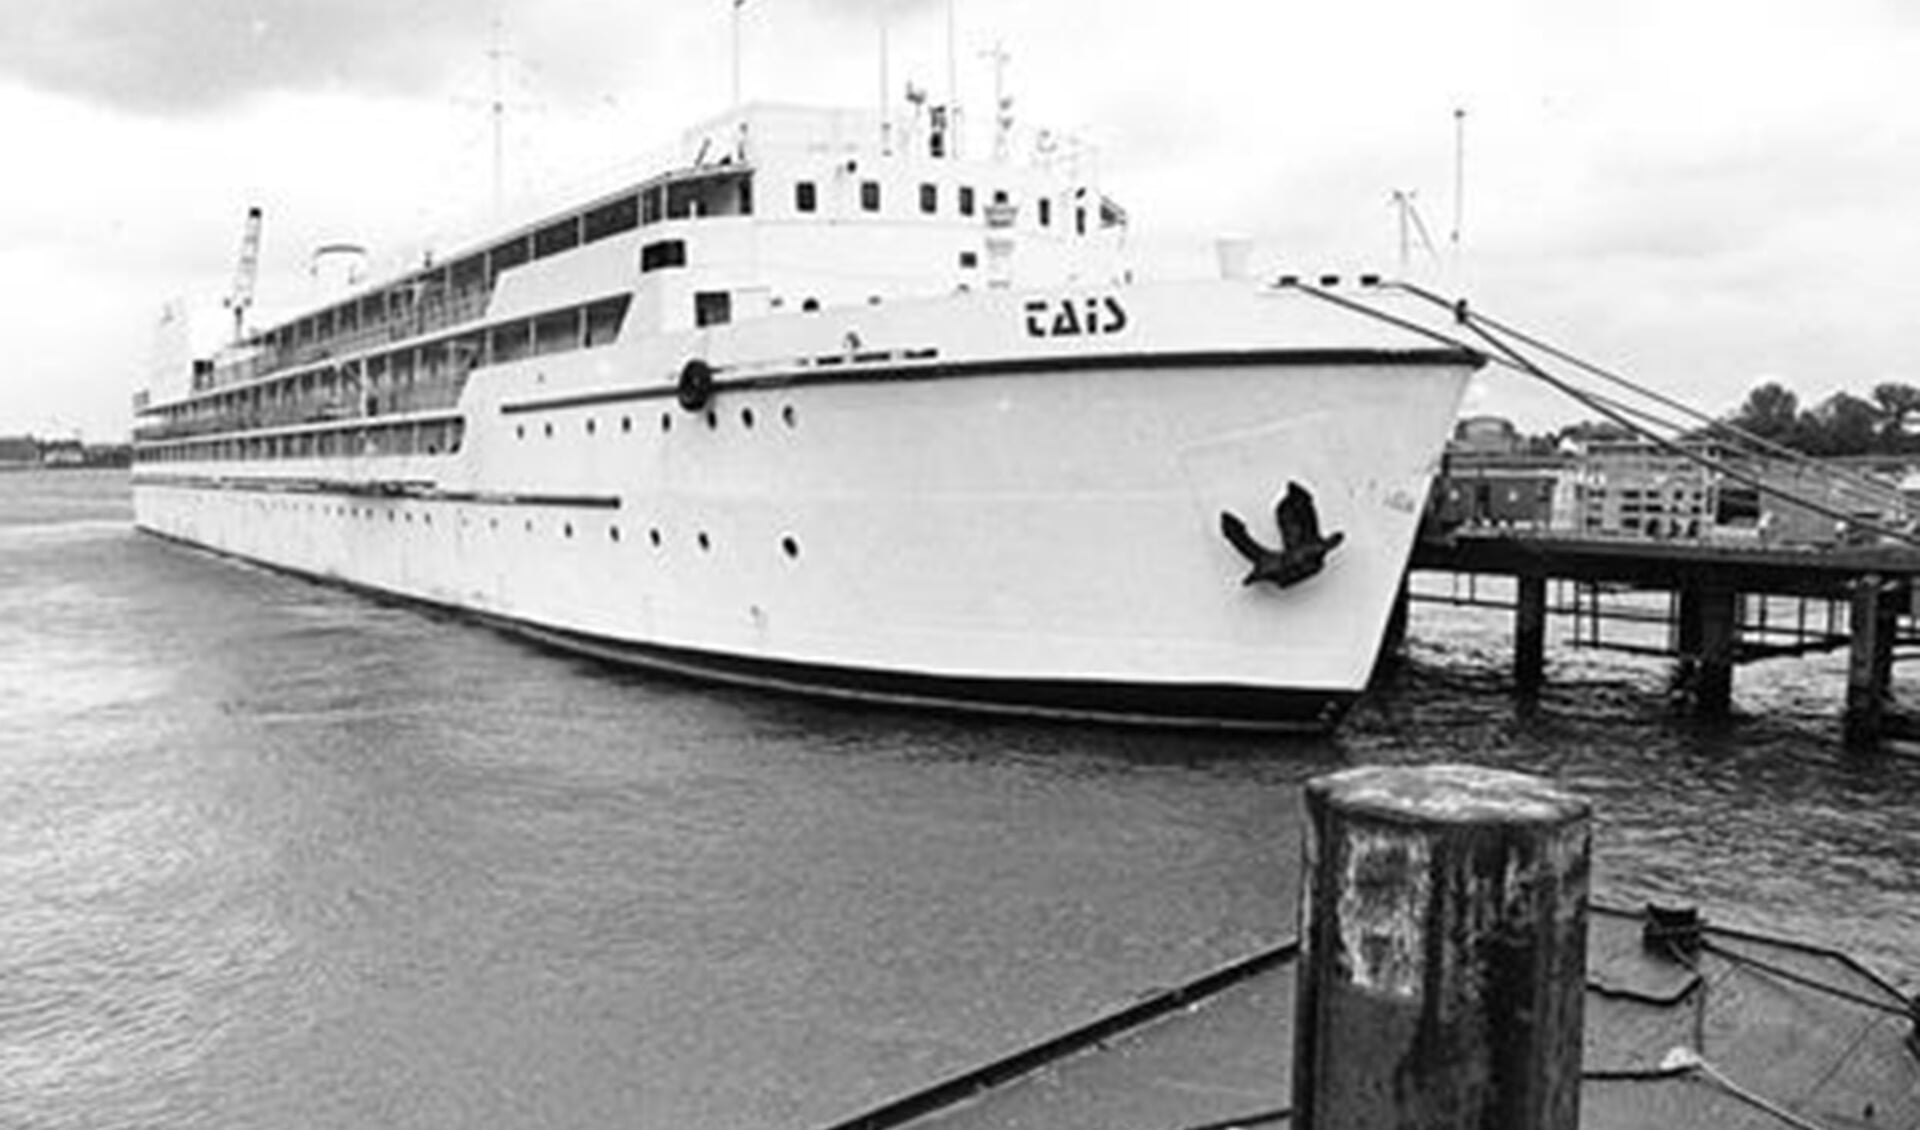 In 1994 lag de hotelboot Tais bij Ridderkerk voor de opvang van asielzoekers